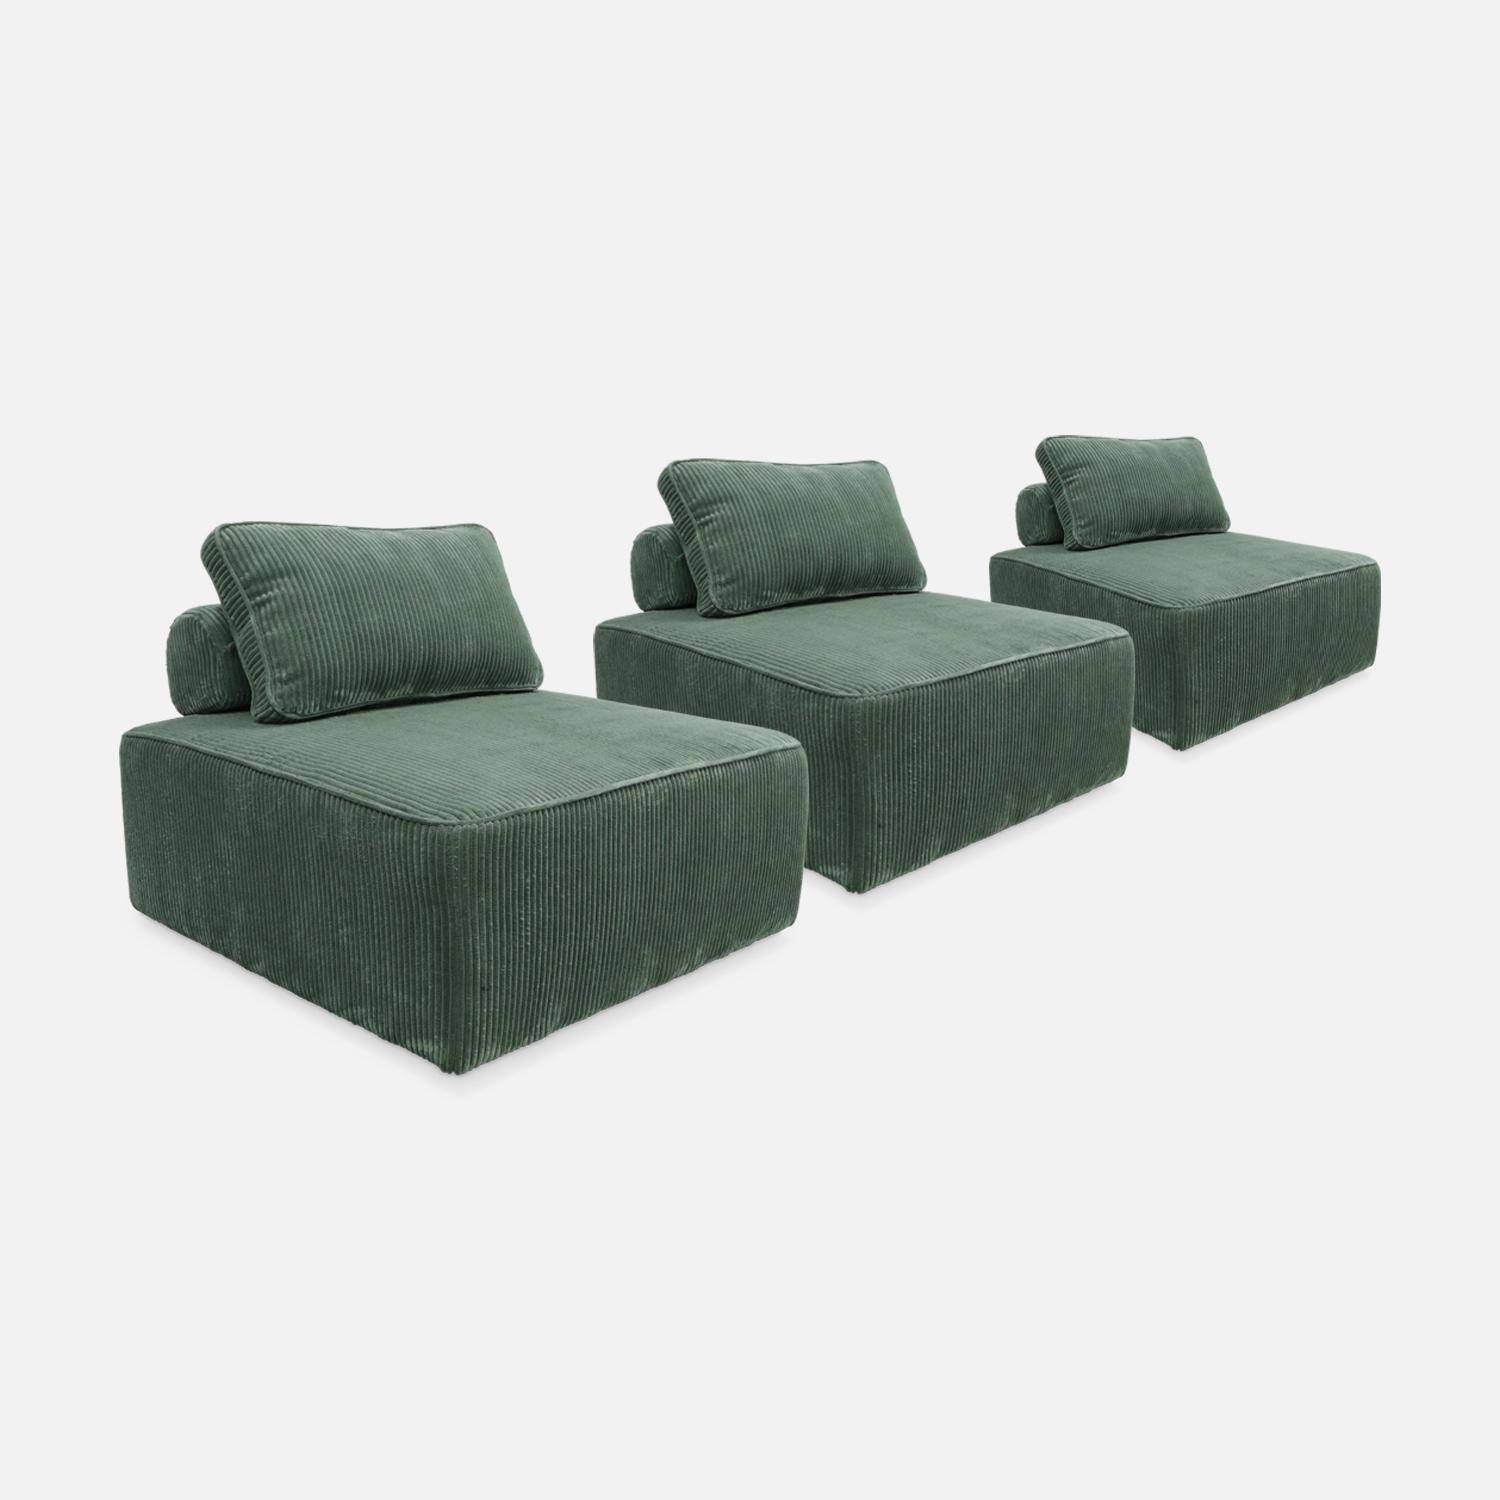 Set van 3 modulaire corduroy fauteuils in groen met kussen,sweeek,Photo4